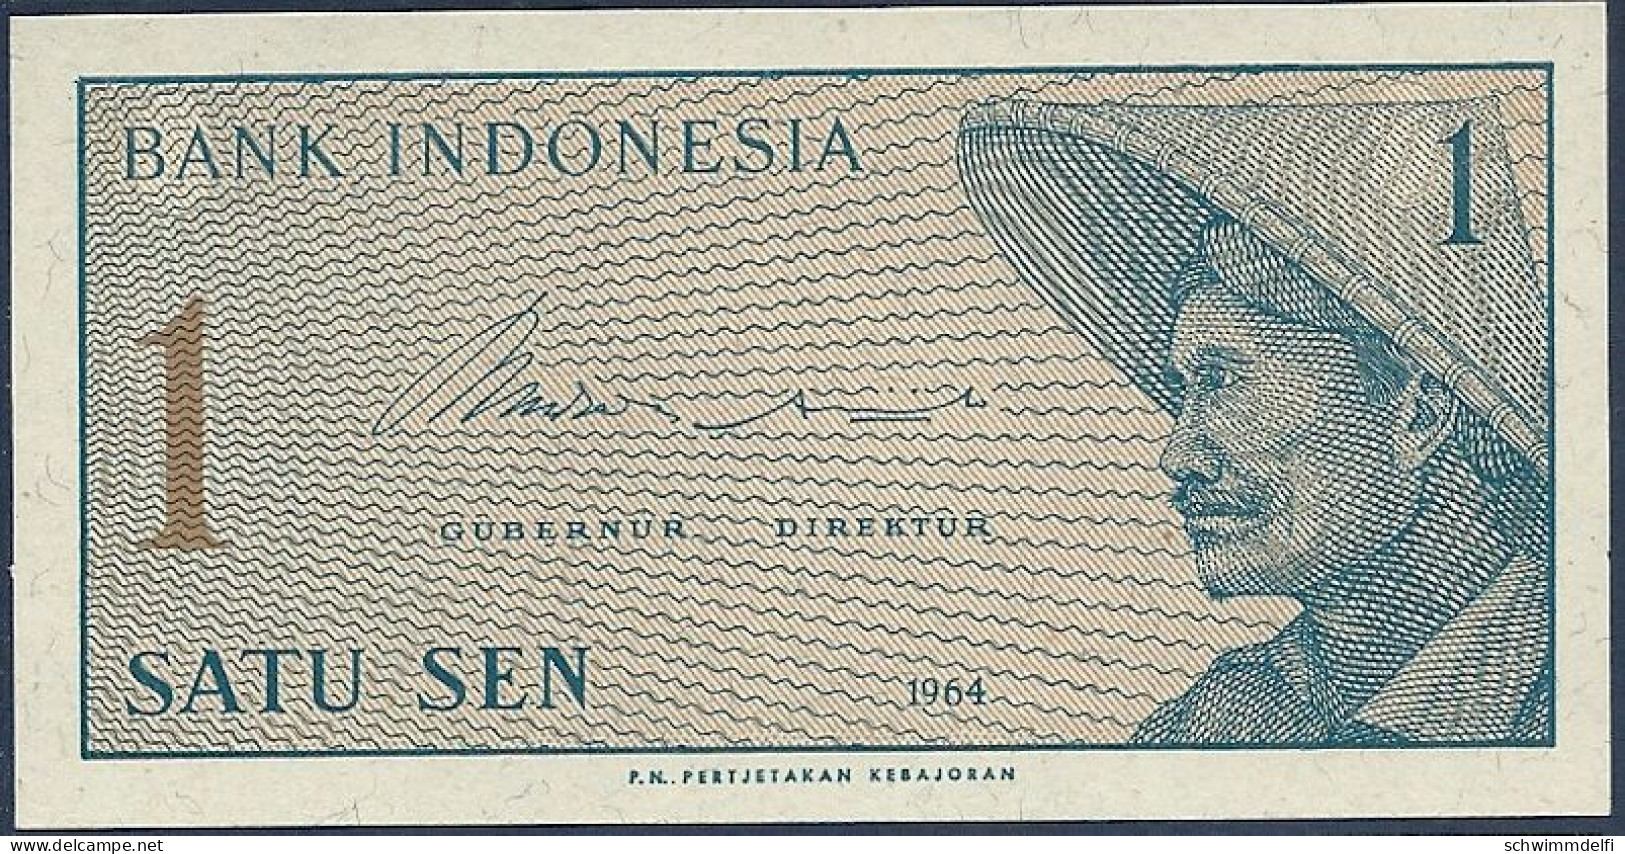 INDONESIEN - INDONESIA - 1 SEN - 50 SEN 1964 - SIN CIRCULAR - UNZ. - UNC. - Indonesien